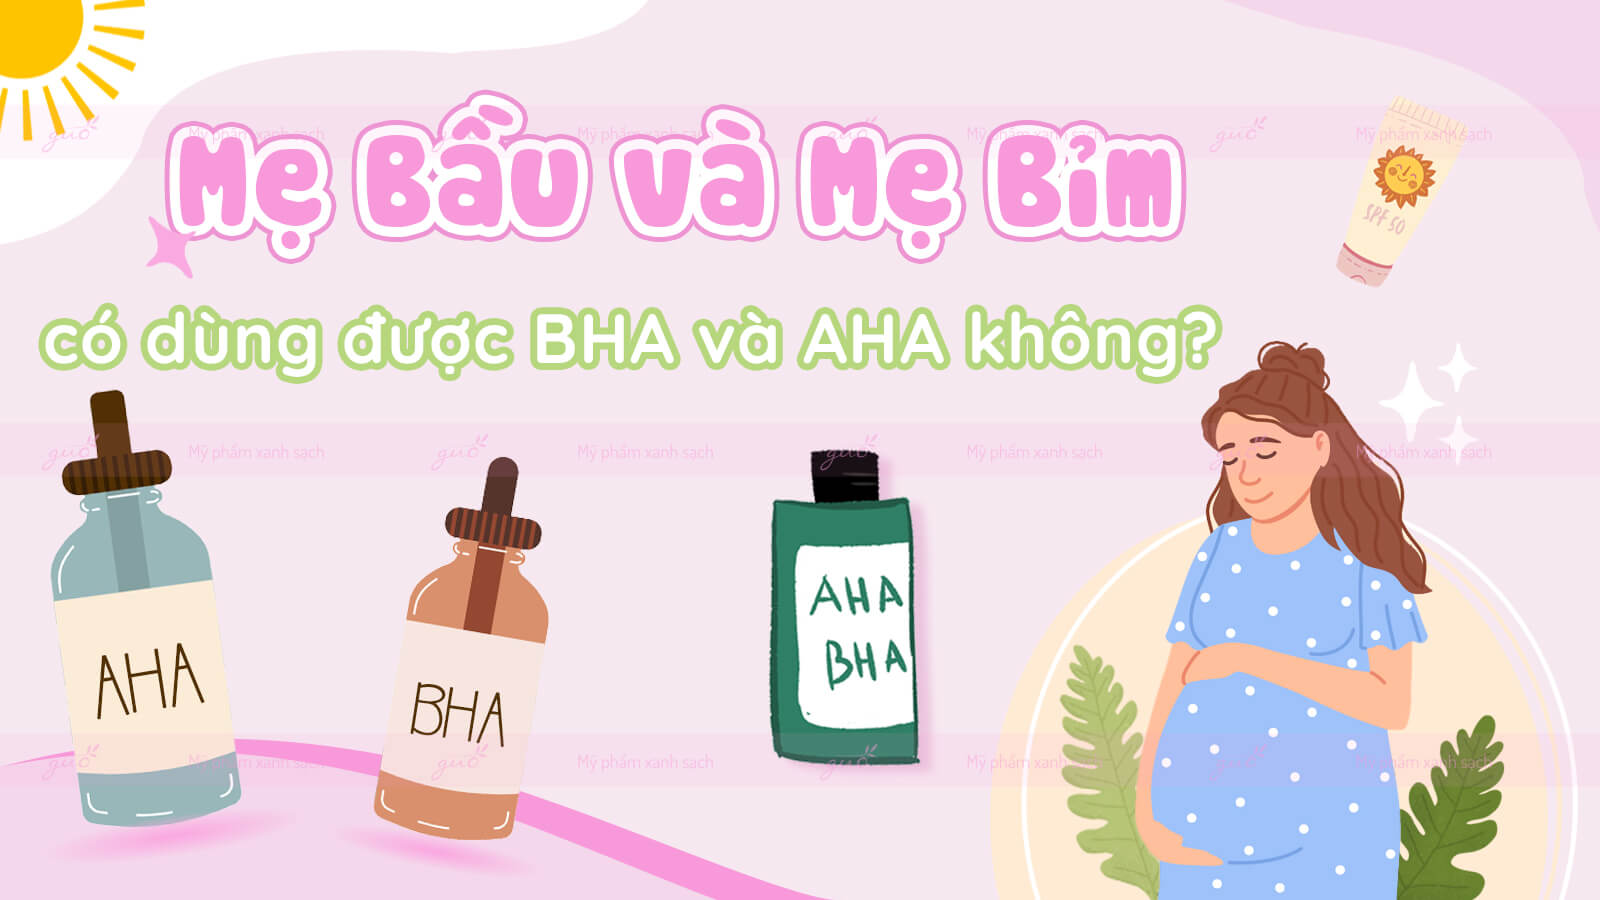 Mẹ bầu và mẹ bỉm có dùng được BHA và AHA không?